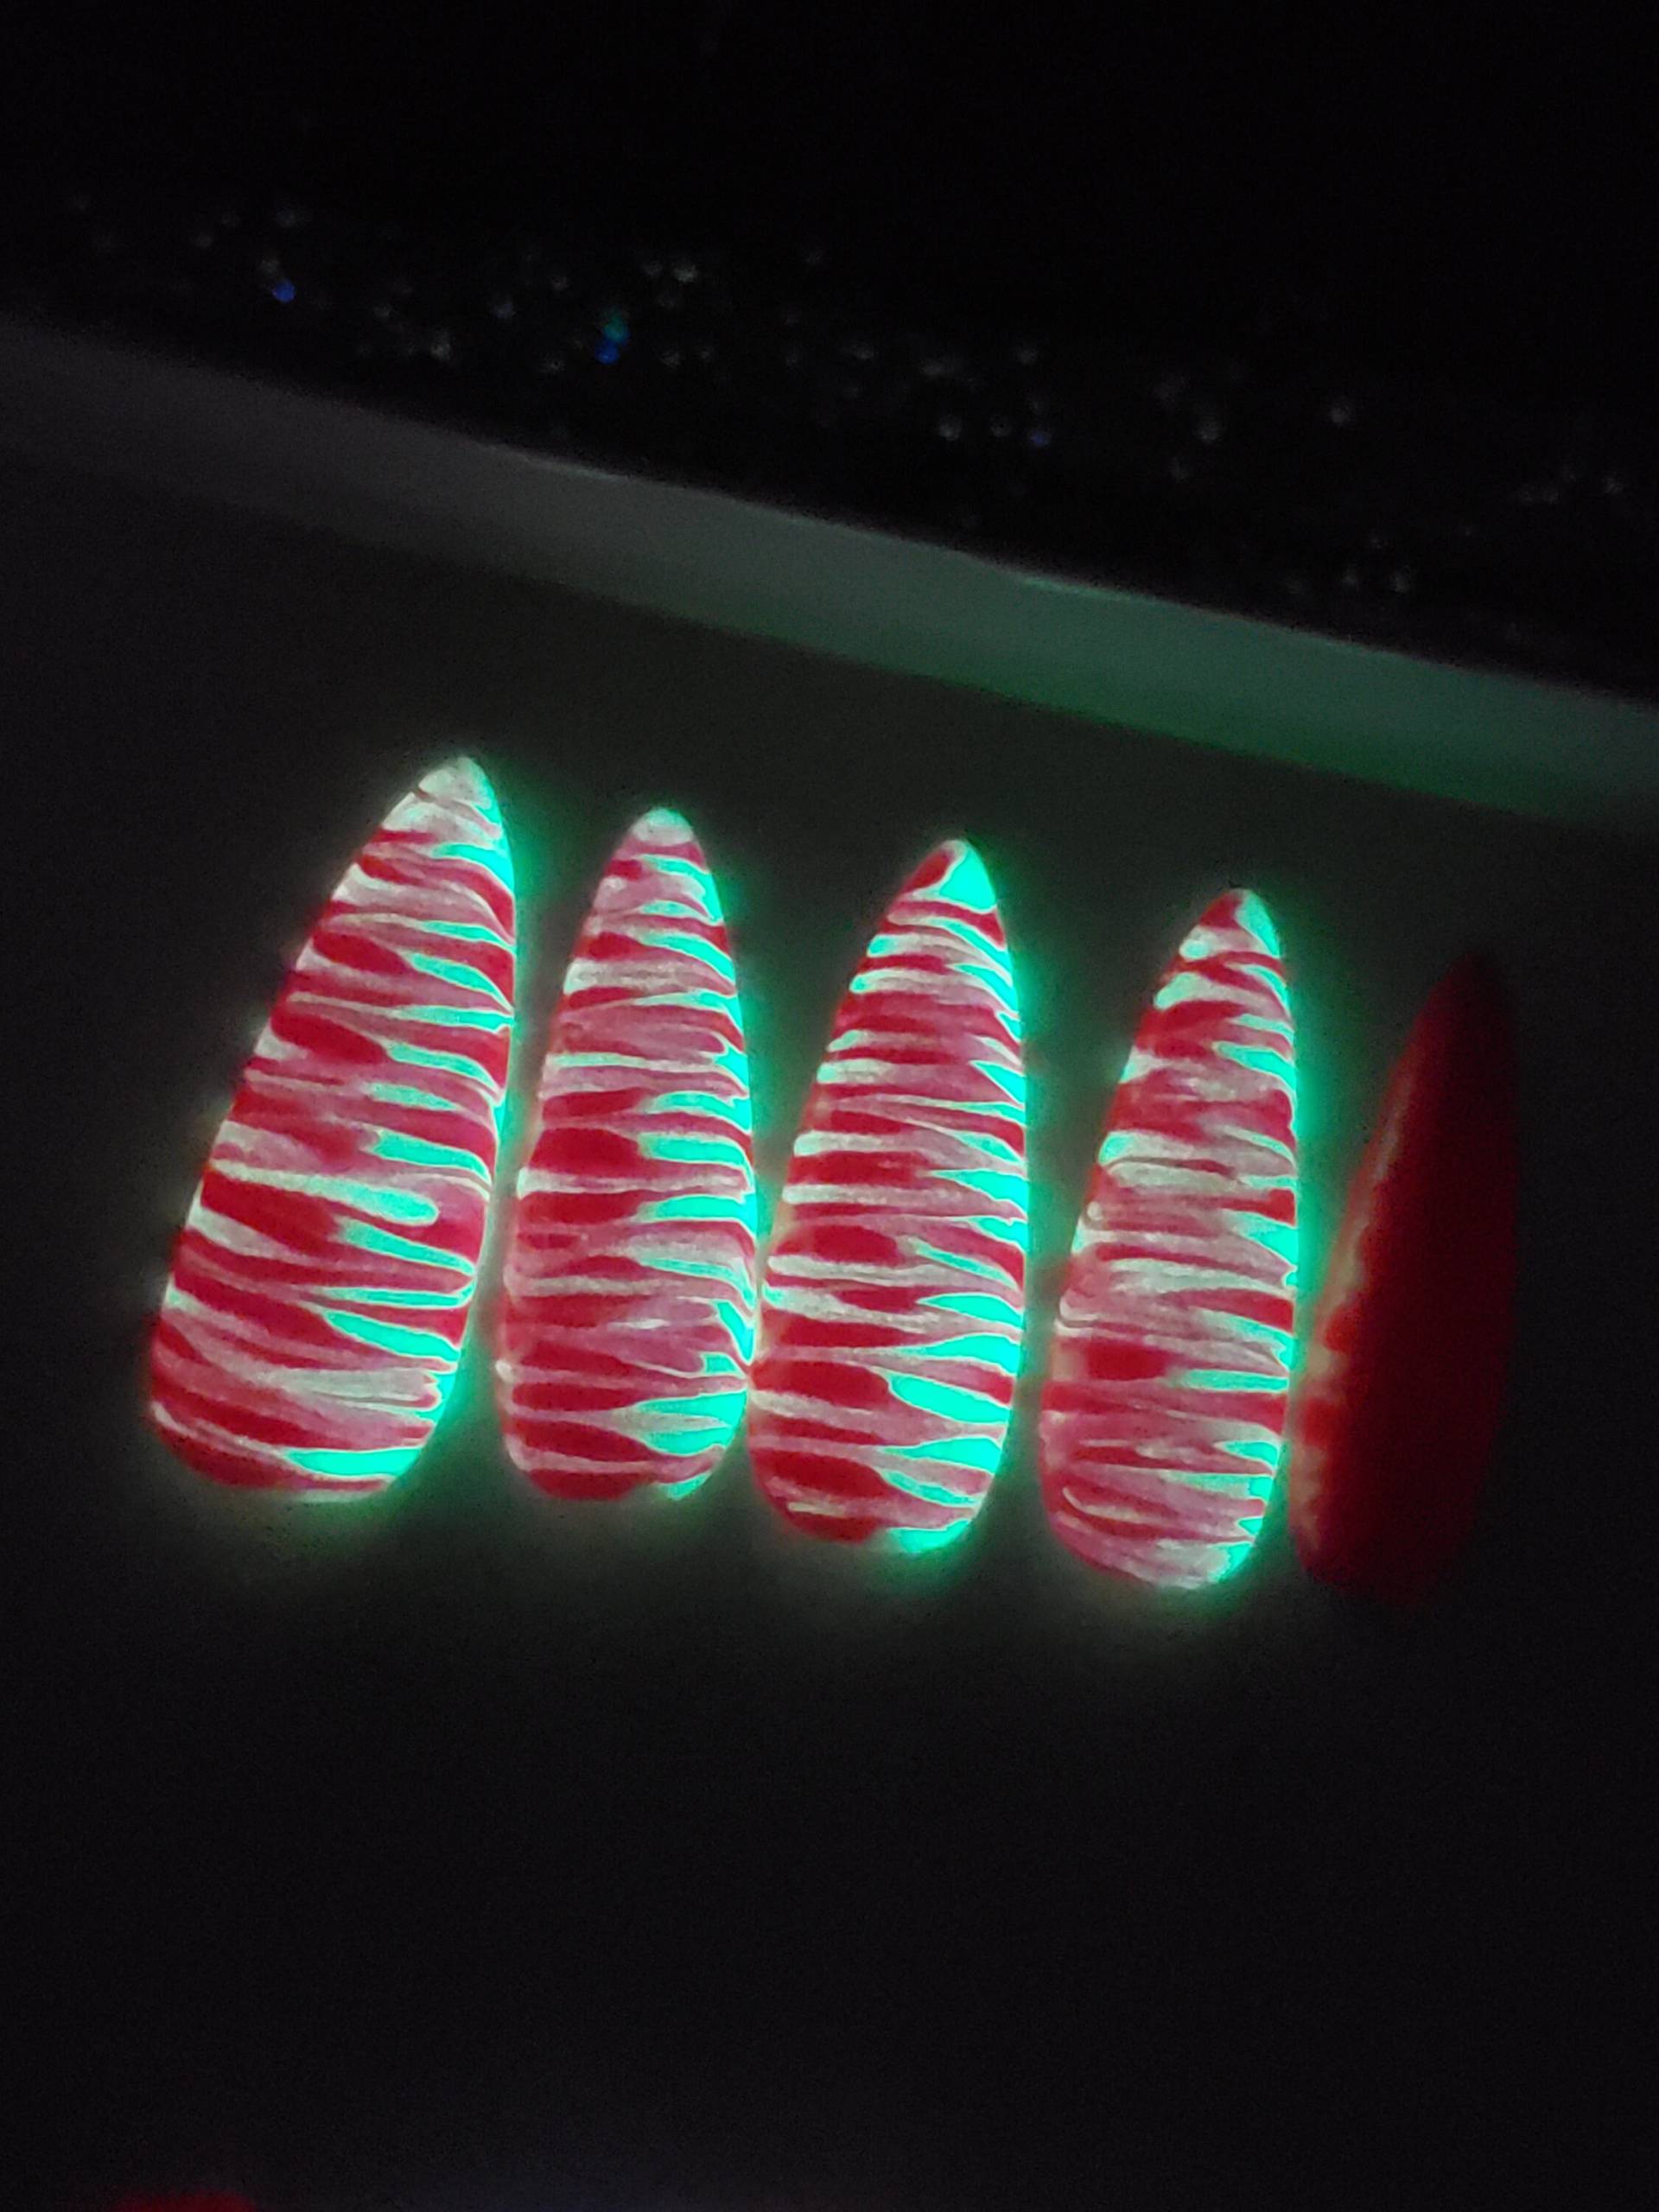 Glow in Dark Nails Custom Gel Press On Nails Fake Handmade 20stk Neon Pink Grün Marmor Wassermelone von PolishedPressed